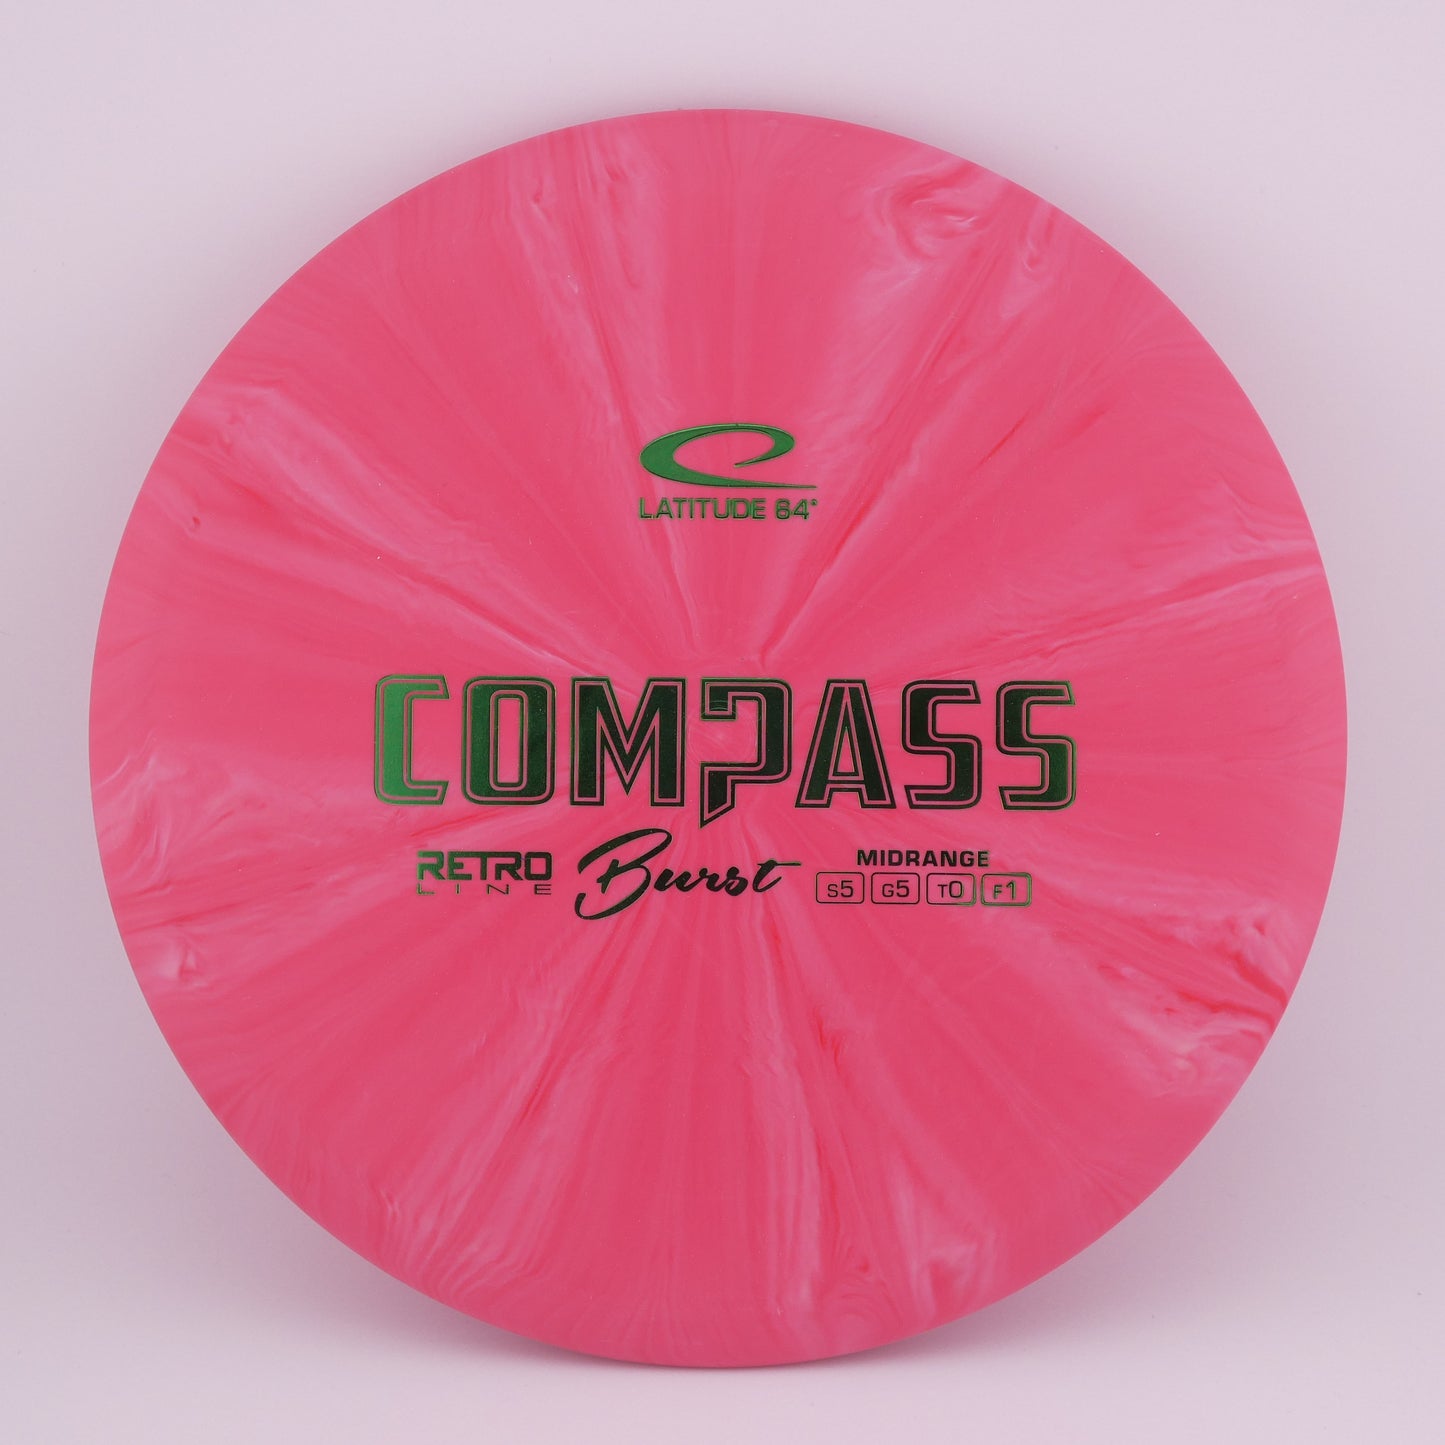 Retro Burst Compass 177g+